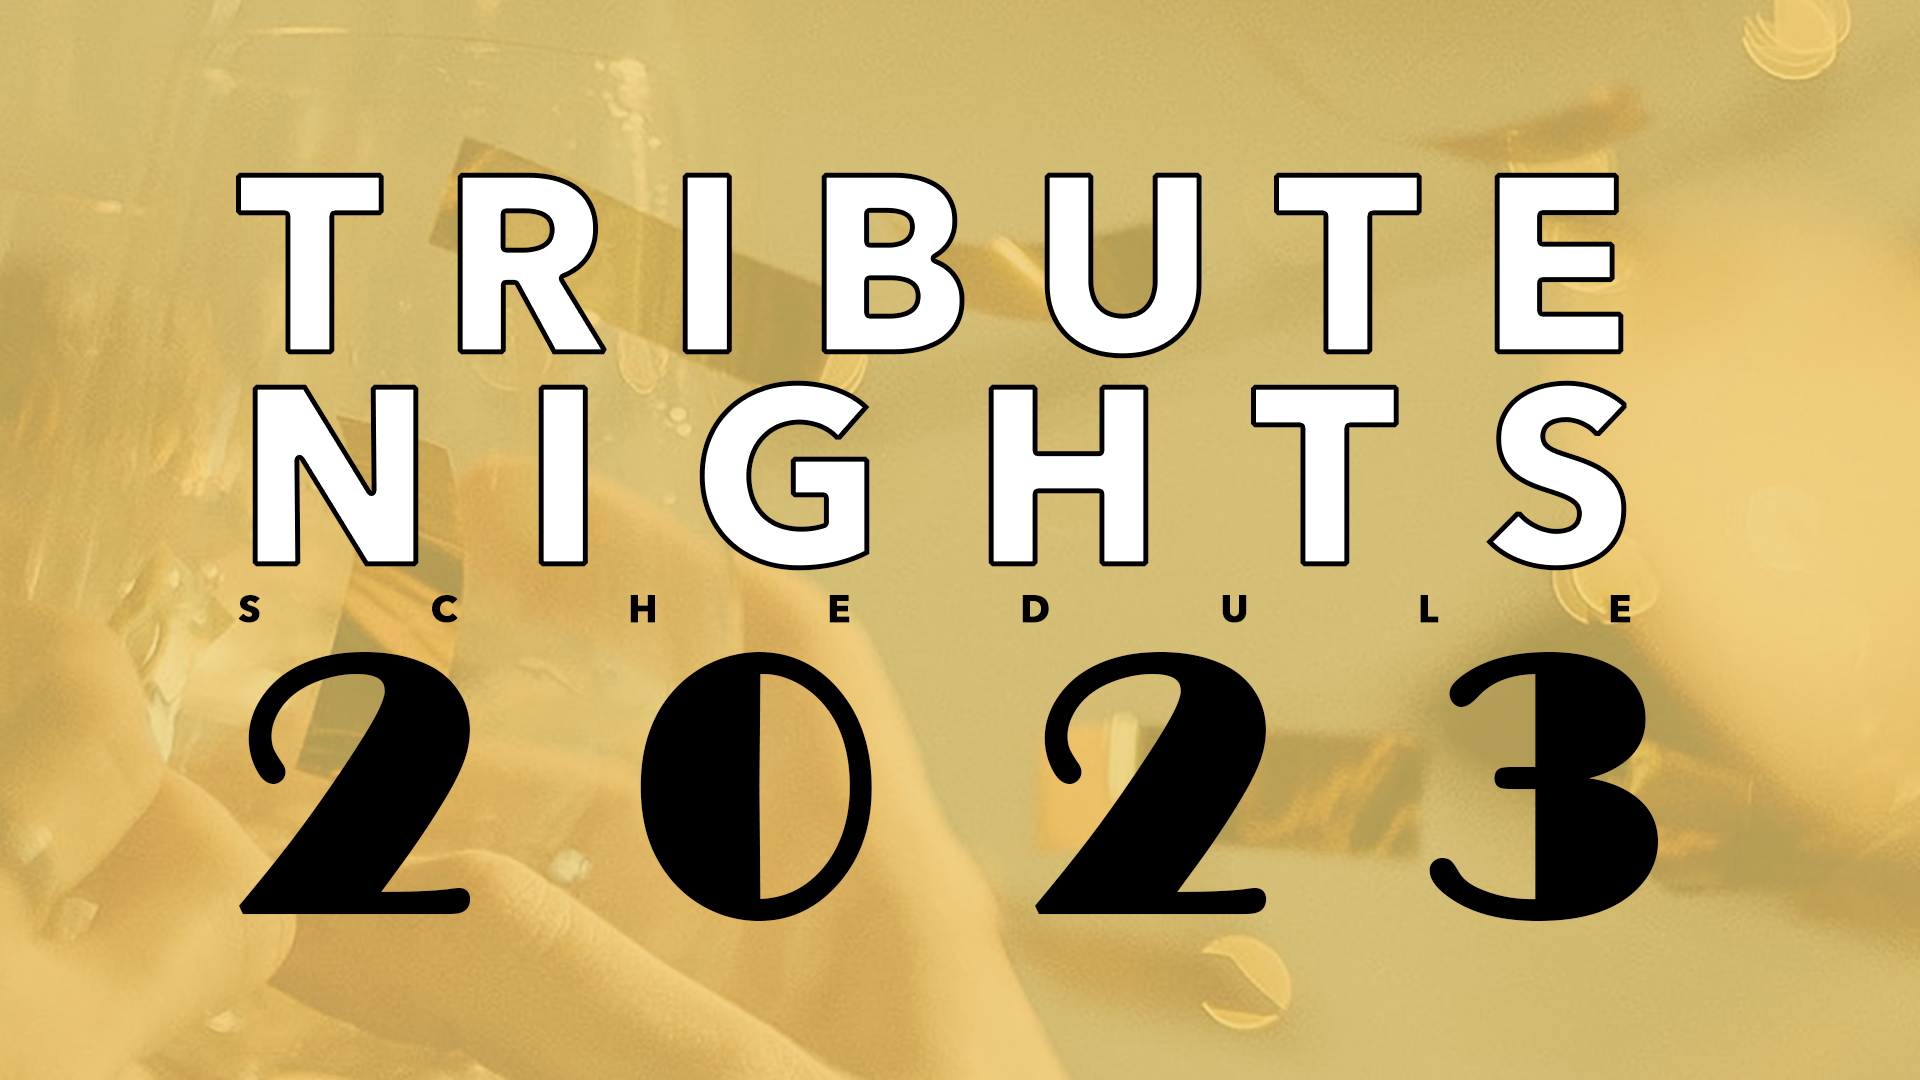 Tribute Night Schedule 2023